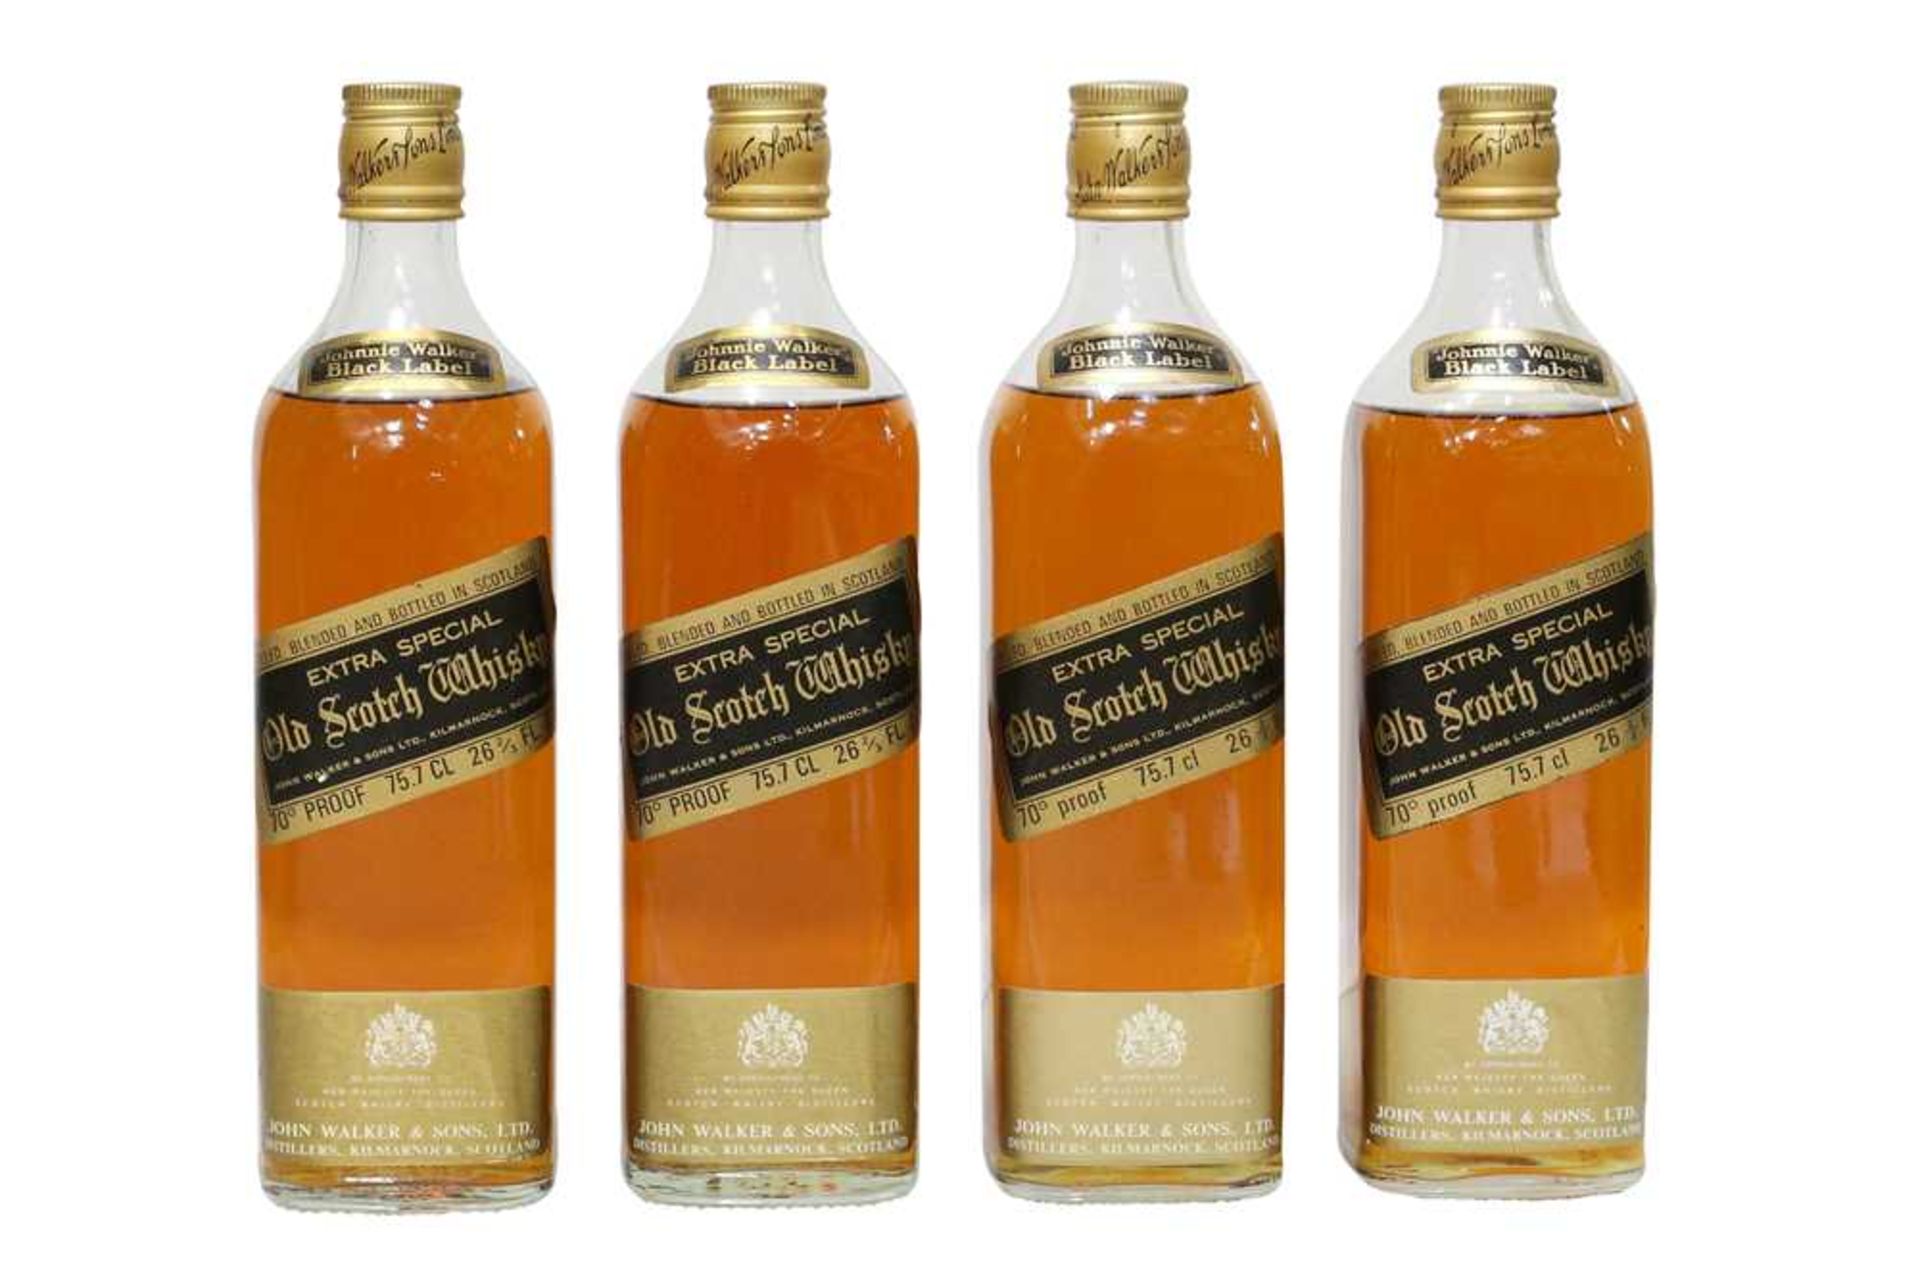 Johnnie Walker, Black Label, Old Scotch Whisky, 1970s bottling, four bottles